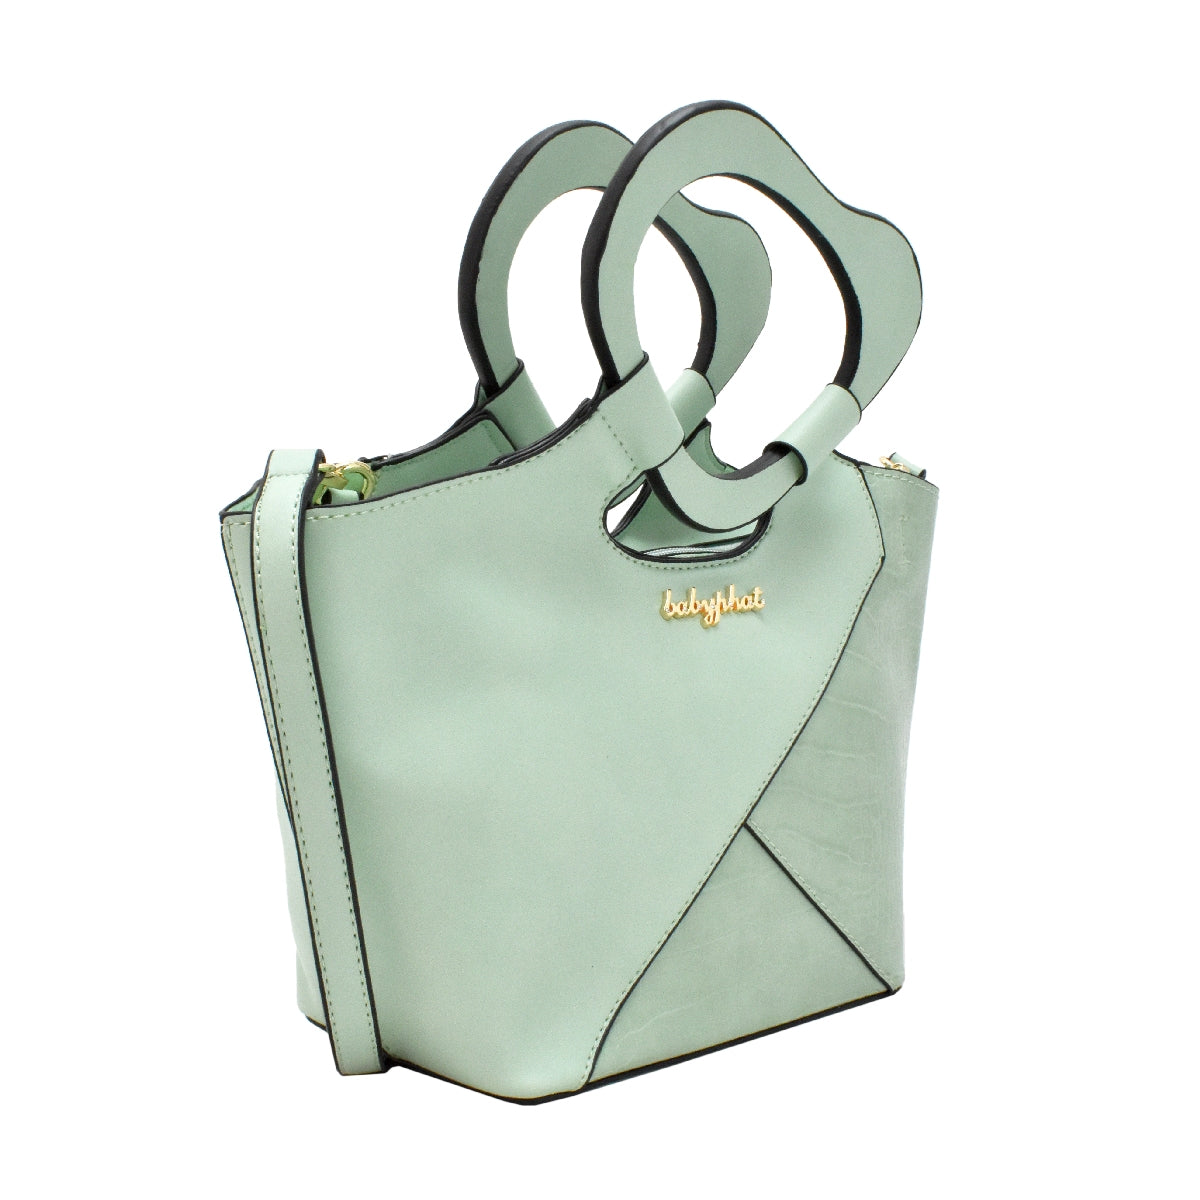 Bolsa [Baby Phat] tipo satchel crossbody con diseño etilo animal print y asa de corazón color verde